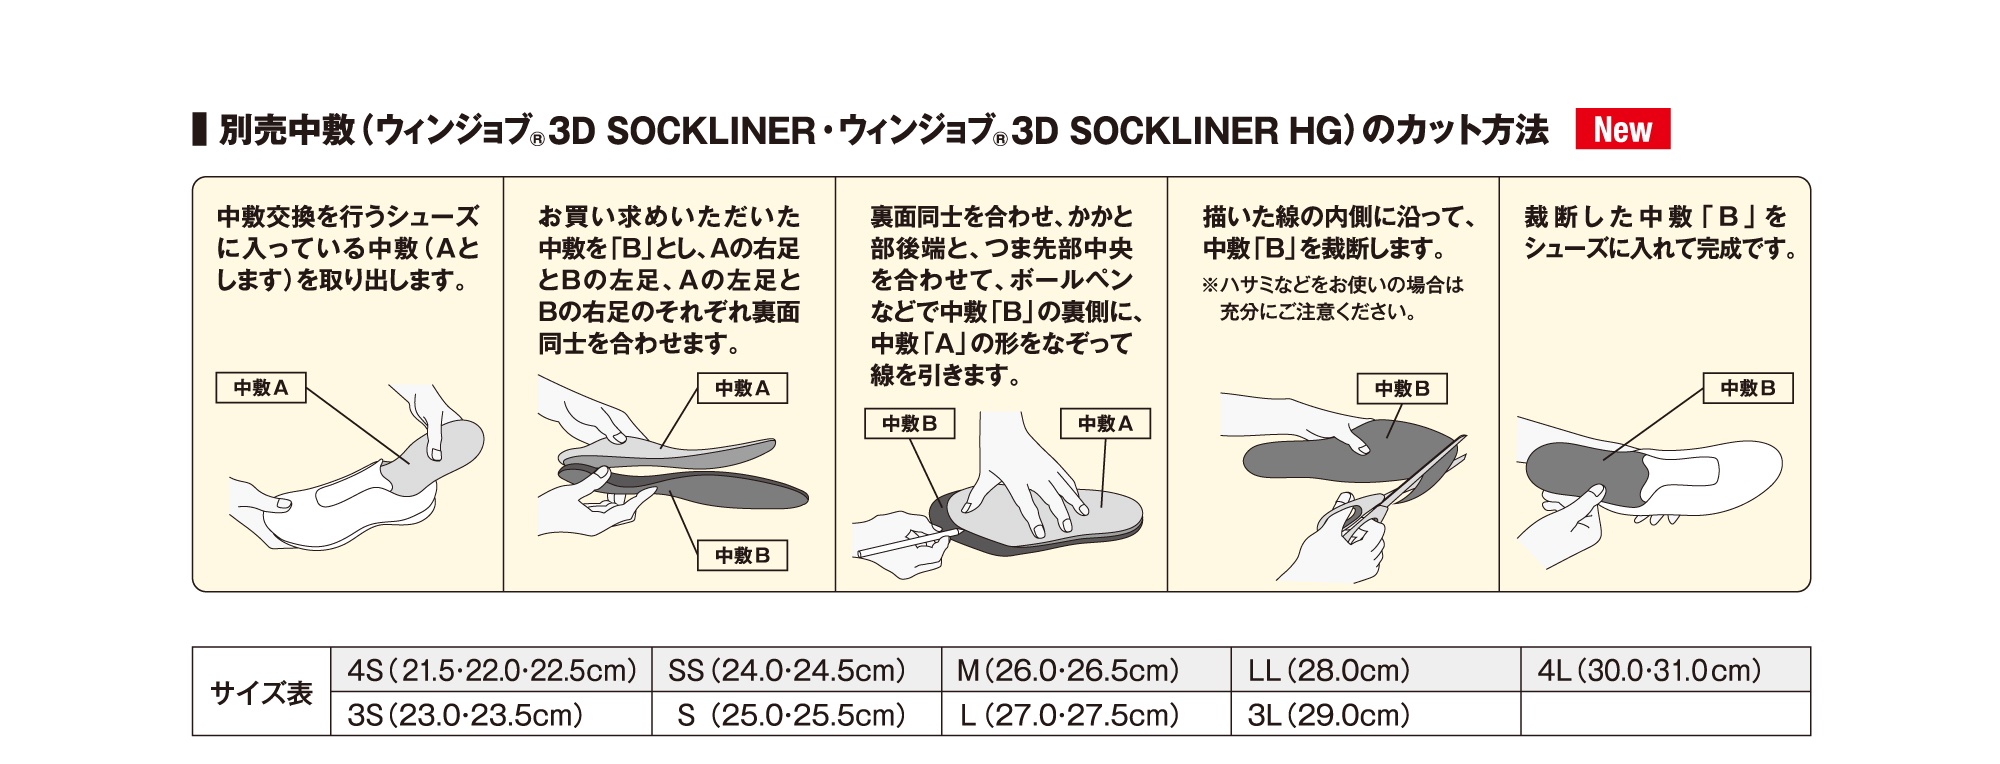 別売中敷（ウィンジョブ®3D SOCKLINER・ウィンジョブ®3D SOCKLINER HG）のカット方法